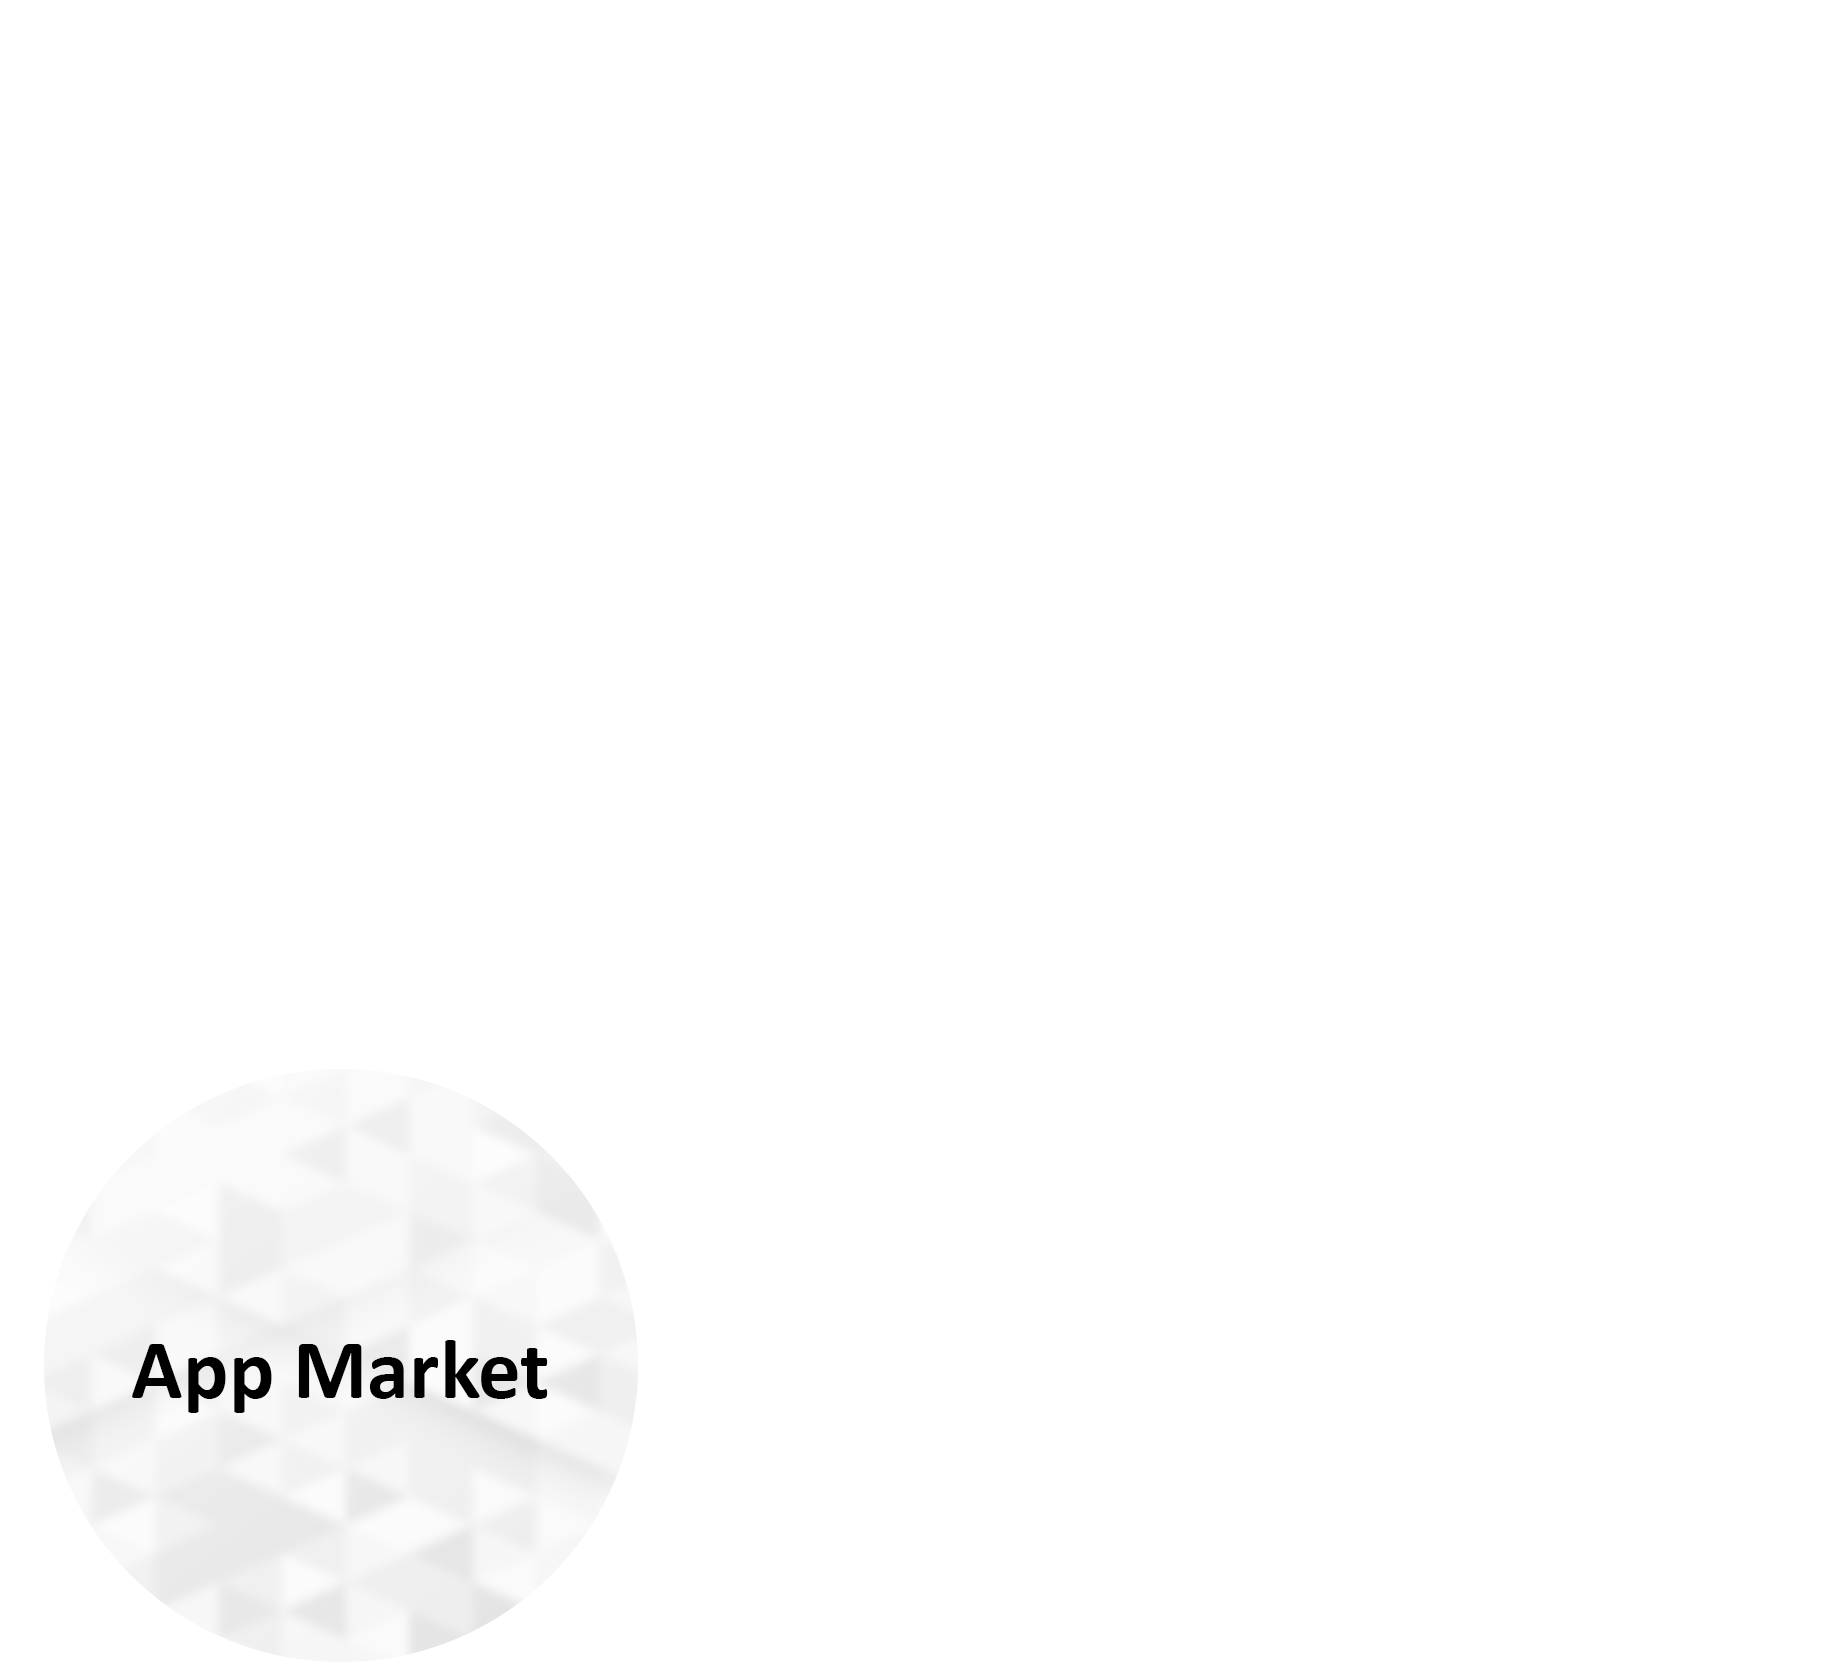 App market